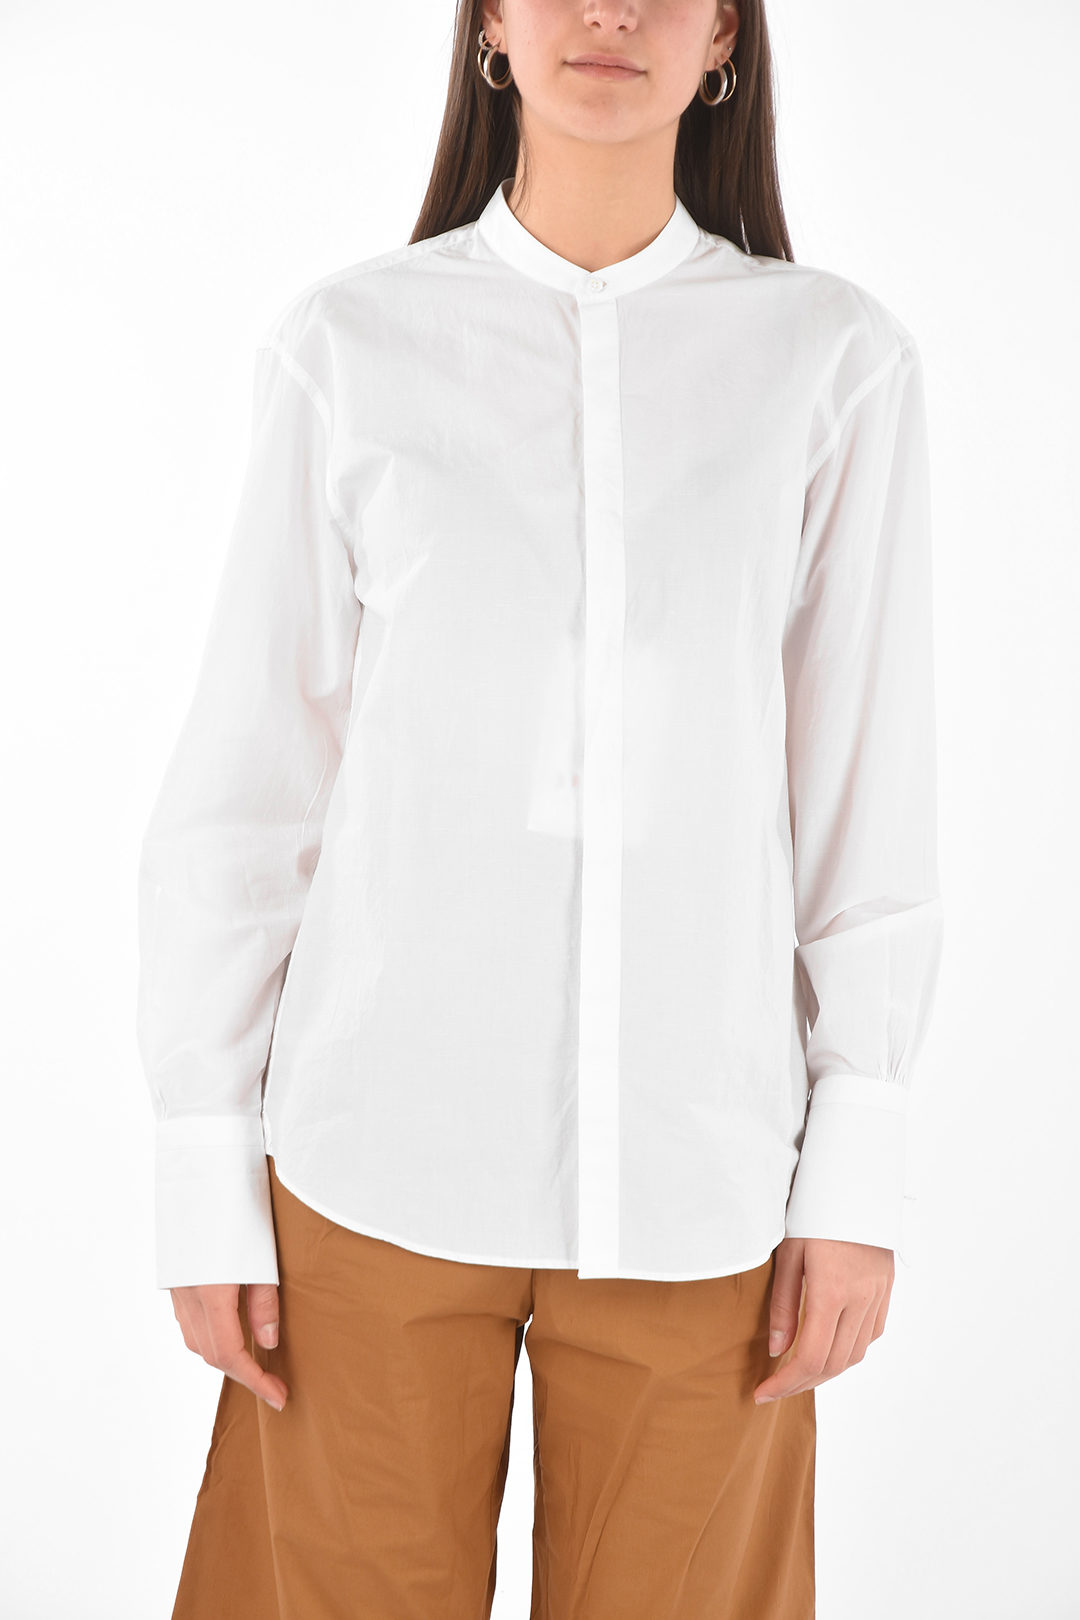 Bourrienne Mandarin Collar Linen and Cotton Shirt women - Glamood Outlet